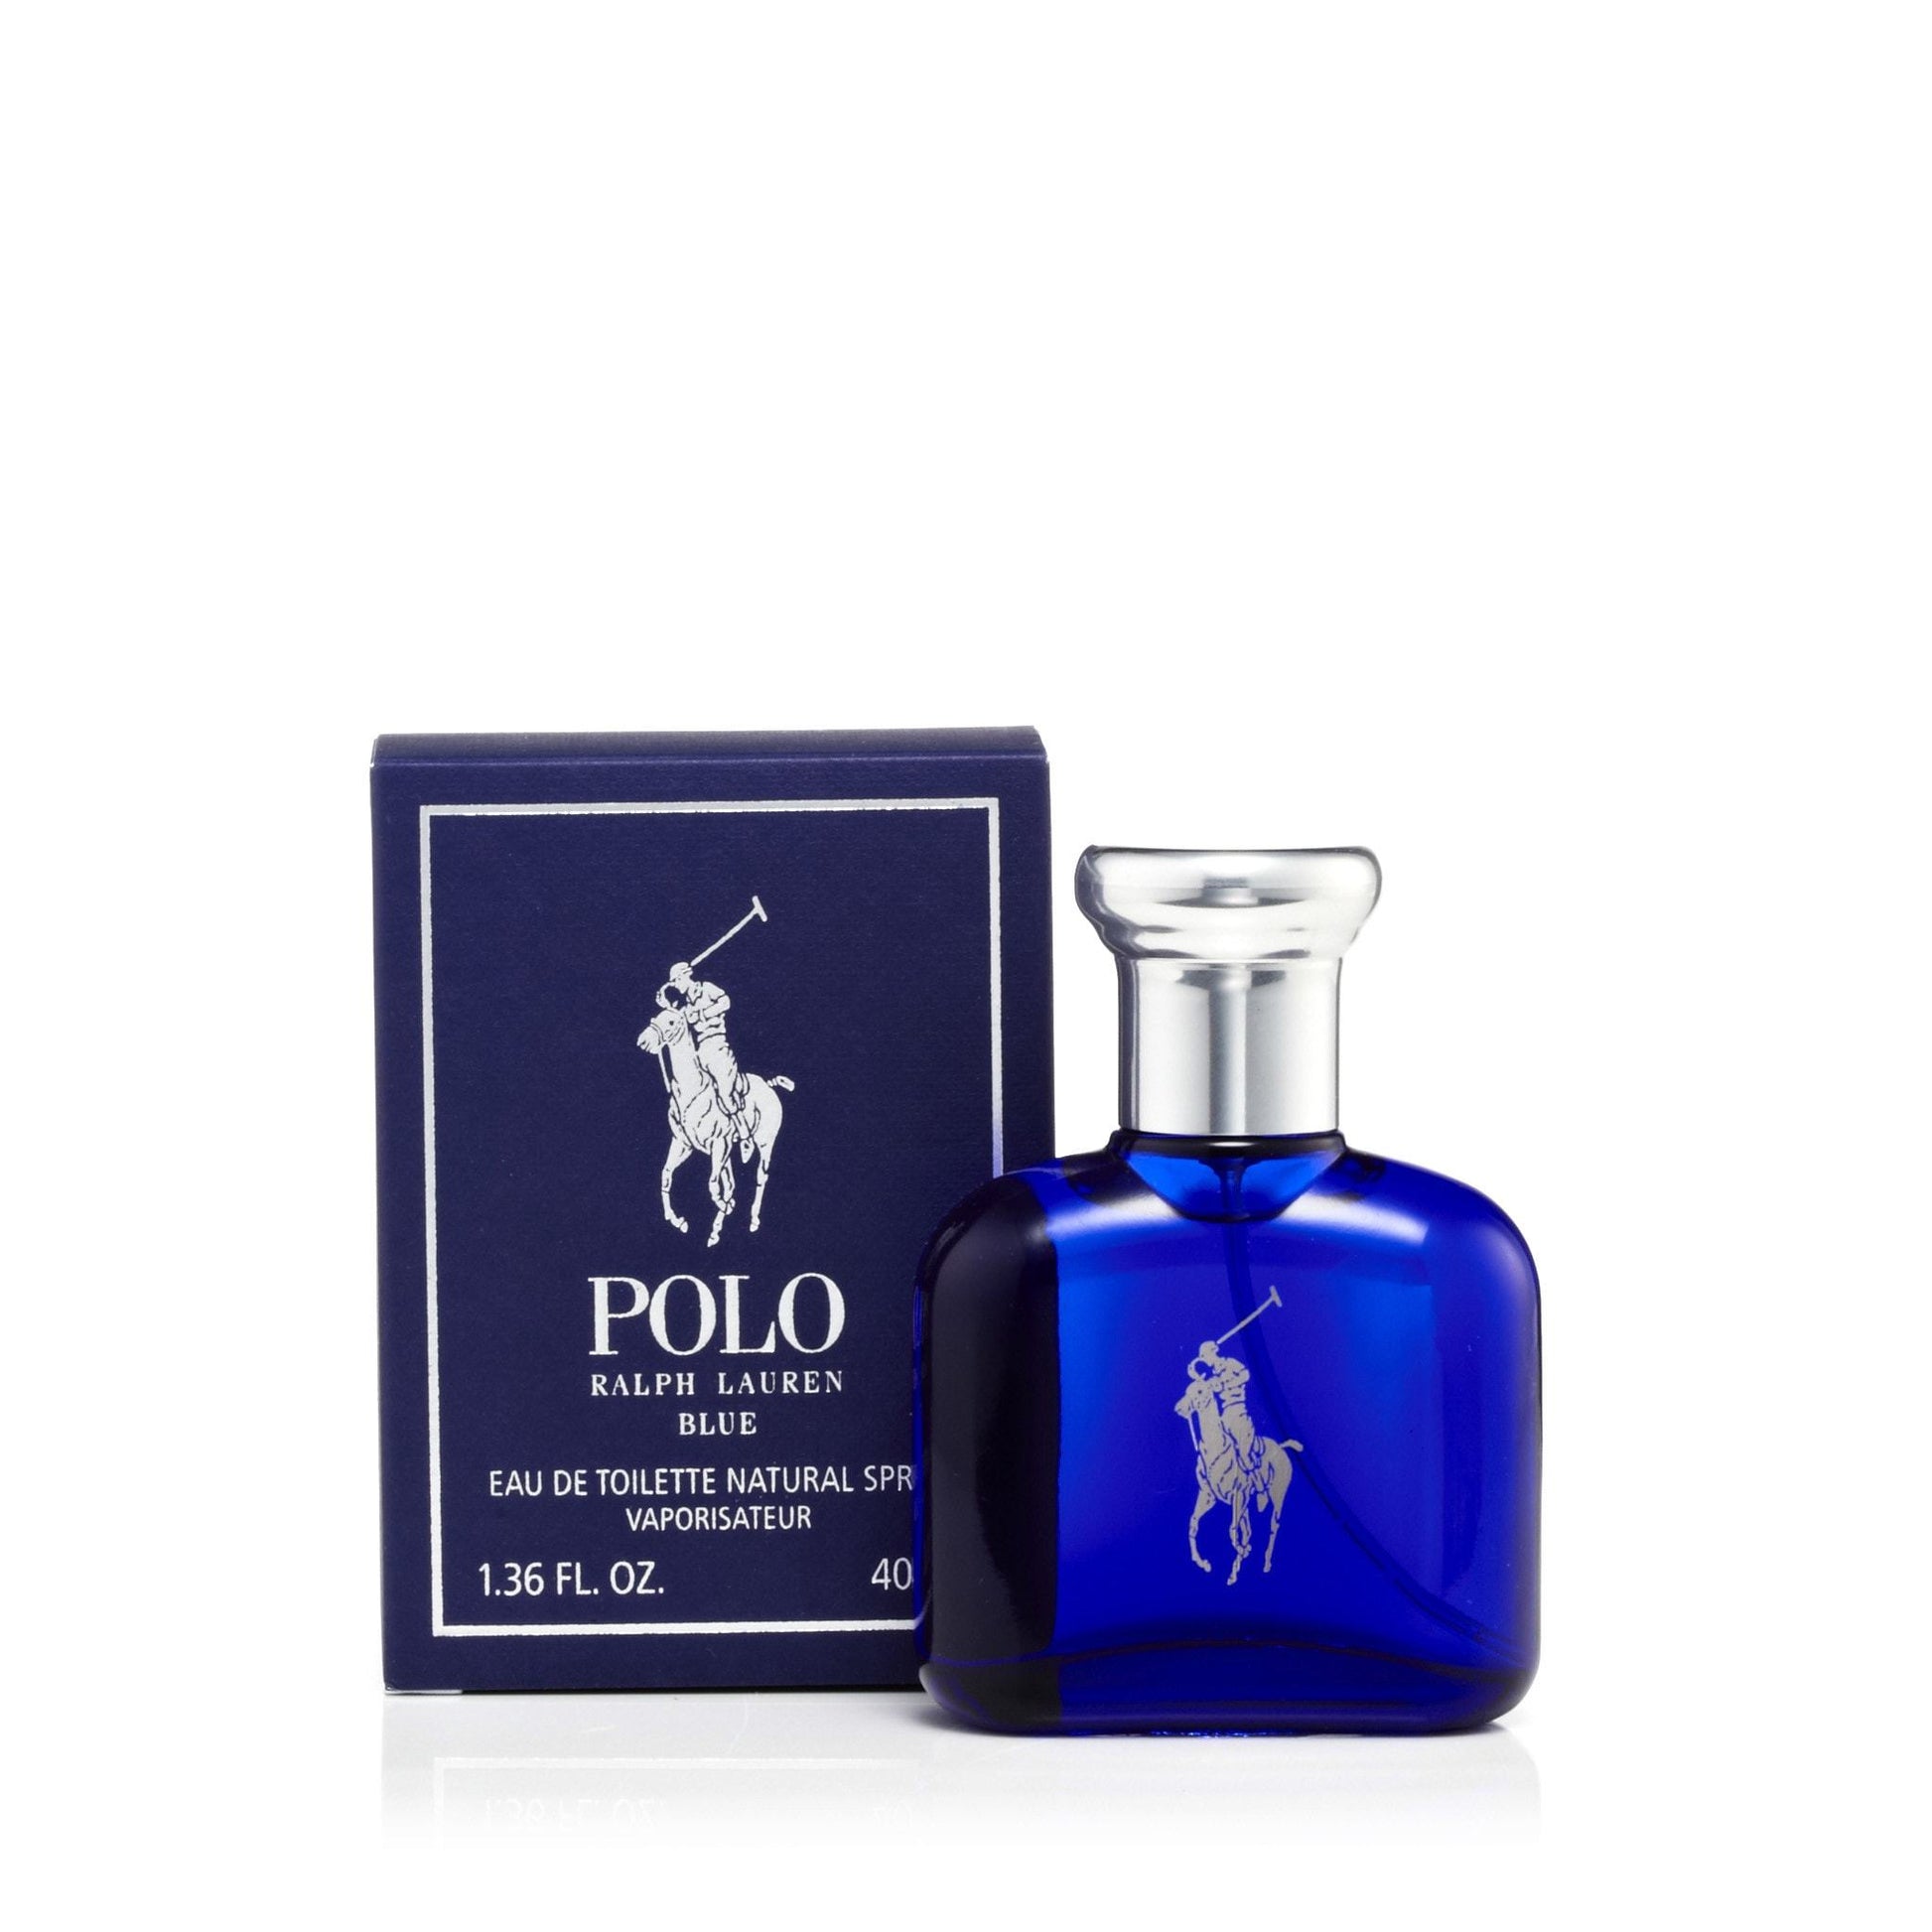 Polo Blue Eau de Toilette Spray for Men by Ralph Lauren, Product image 7